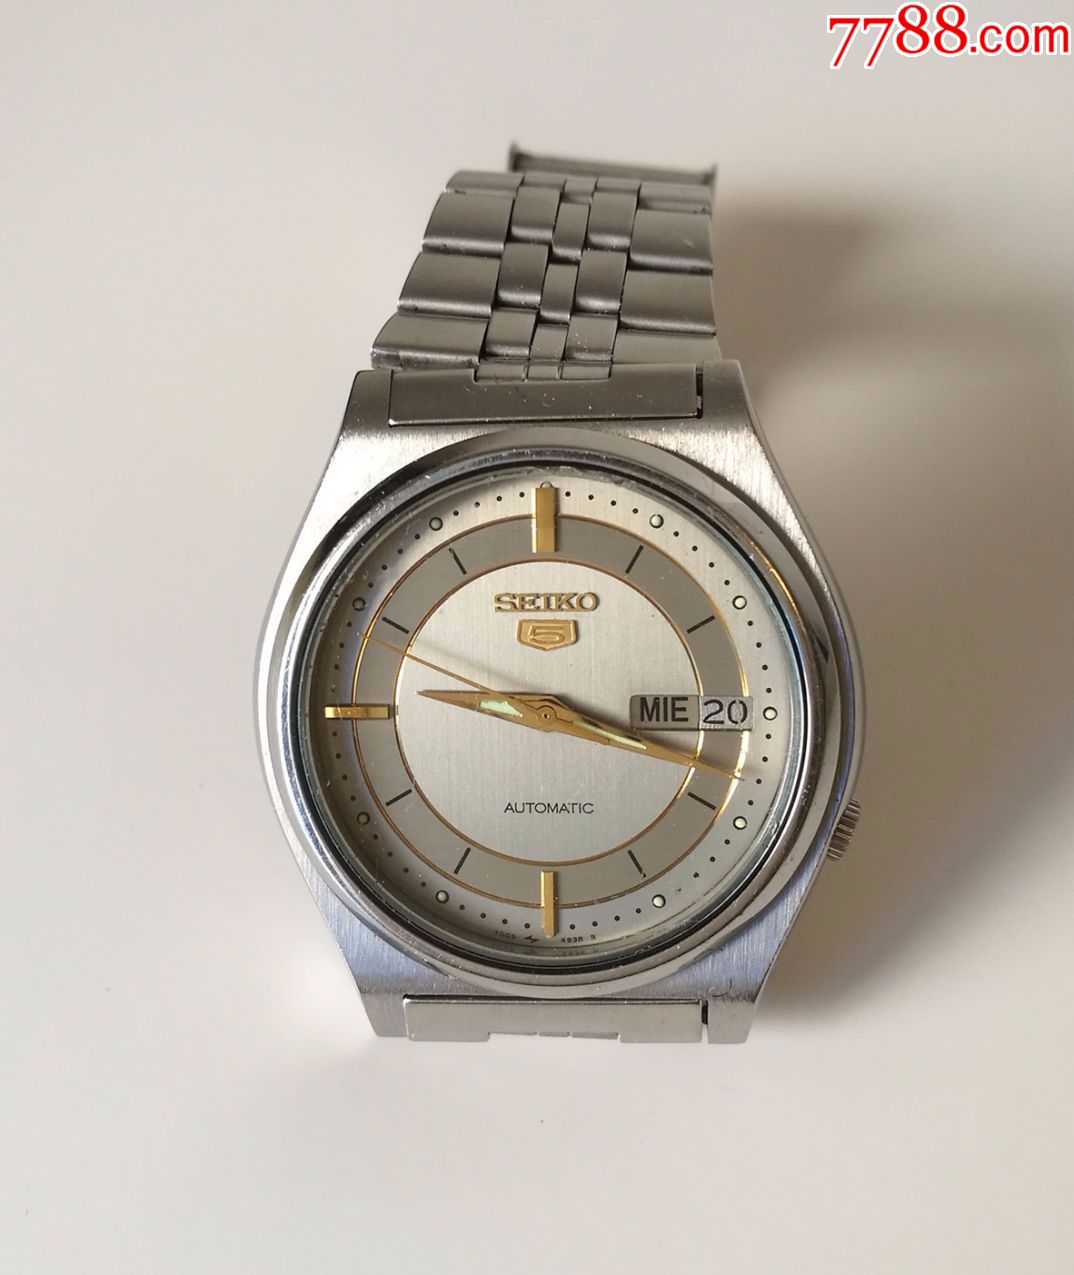 走时准的日本原装精工男表,7009机芯,手表/腕表